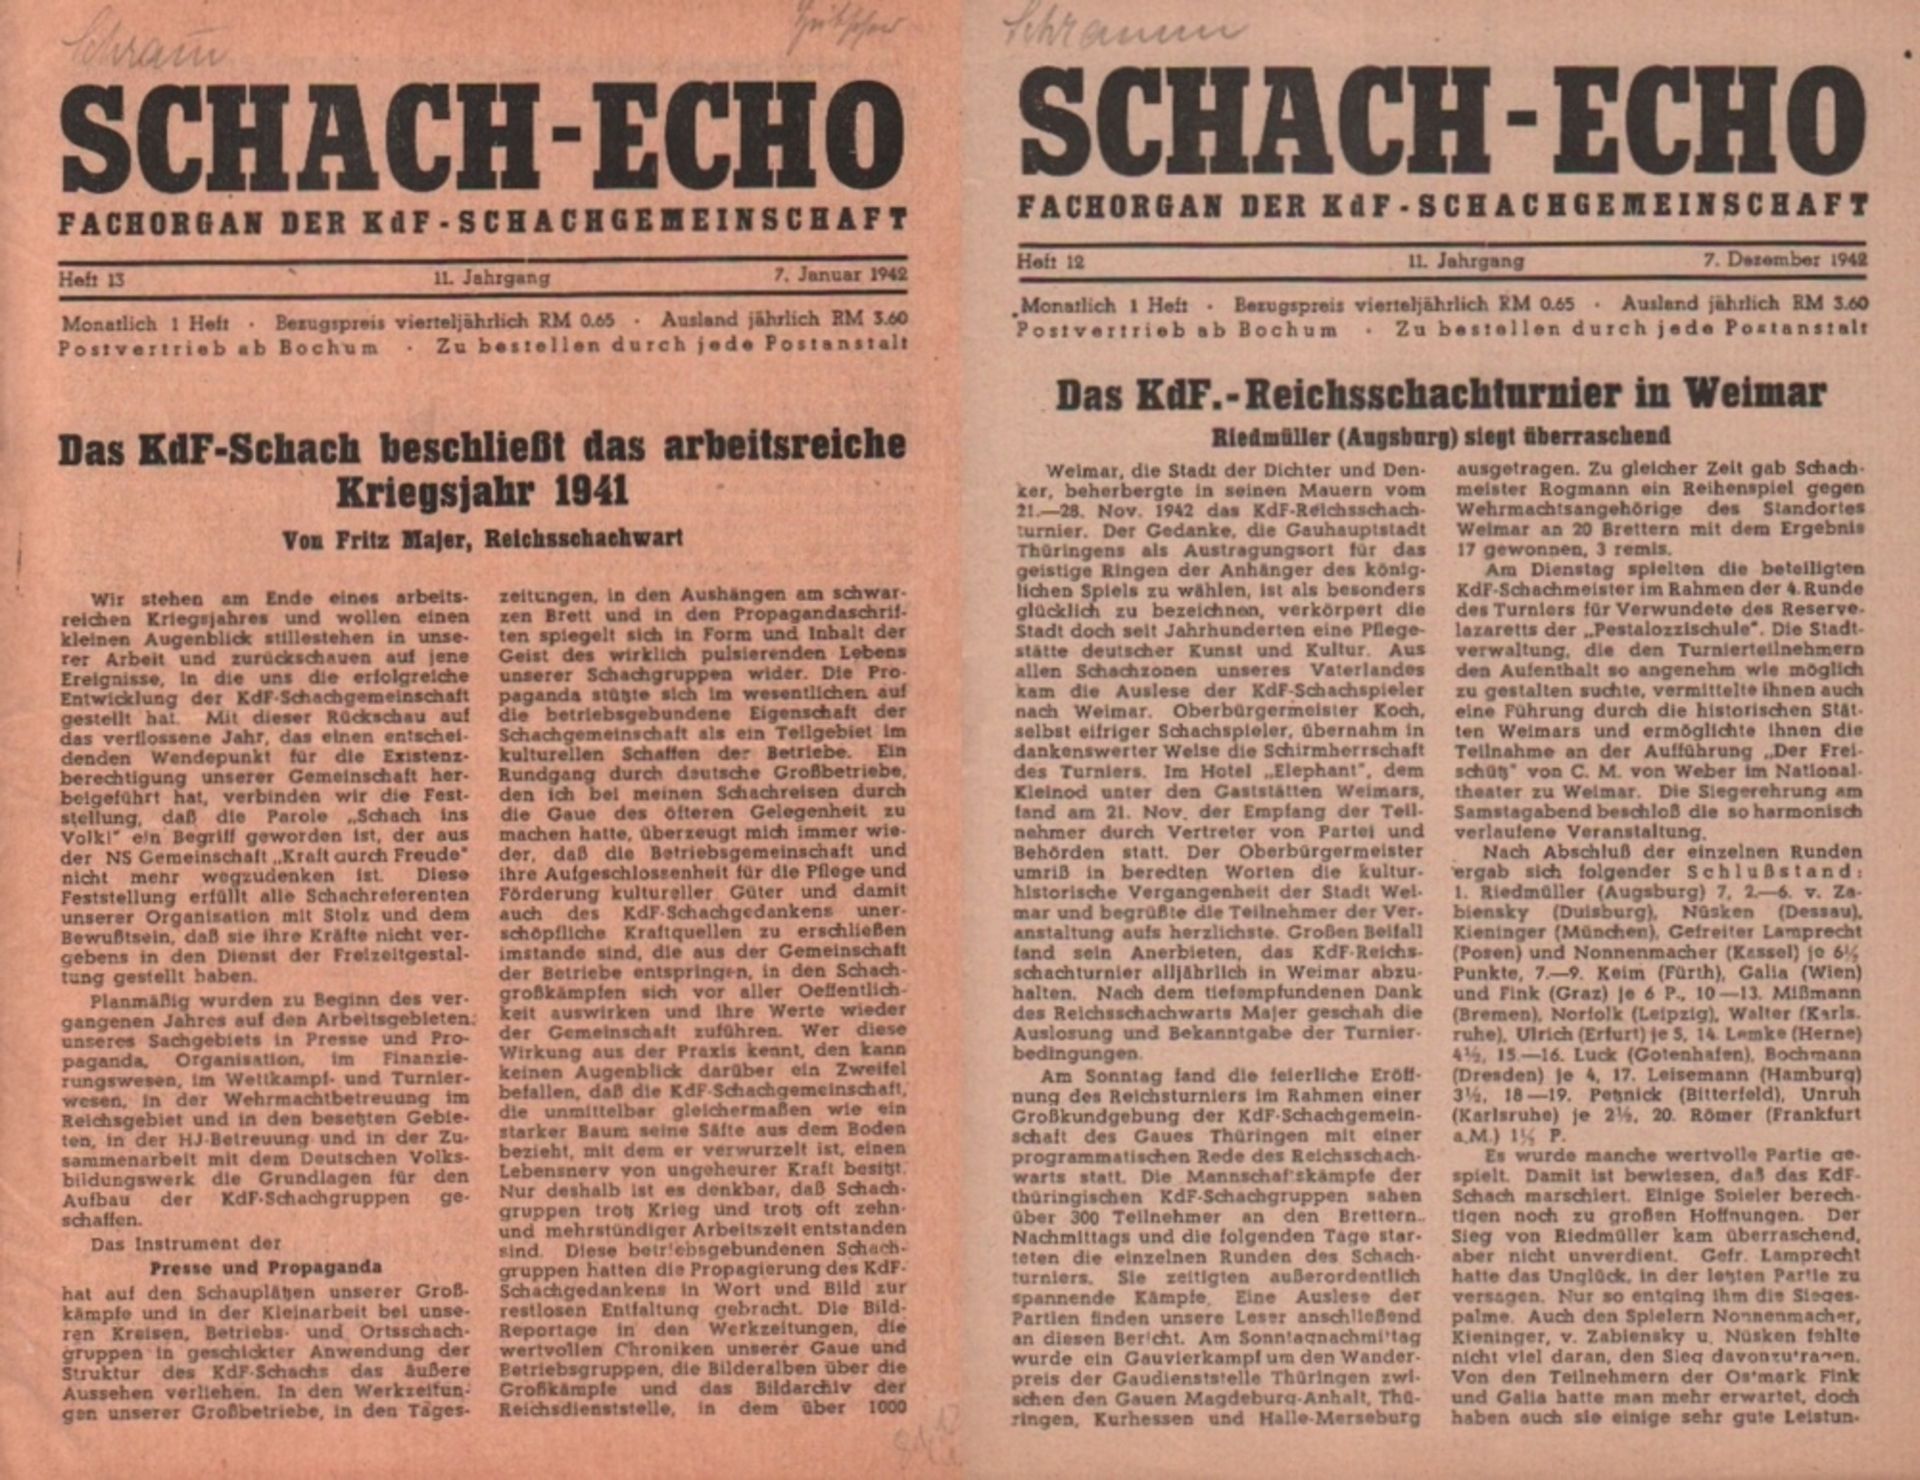 Schach - Echo. Fachorgan der KdF - Schachgemeinschaft. Herausgeber: Otto Katzer. 11. Jahrgang (